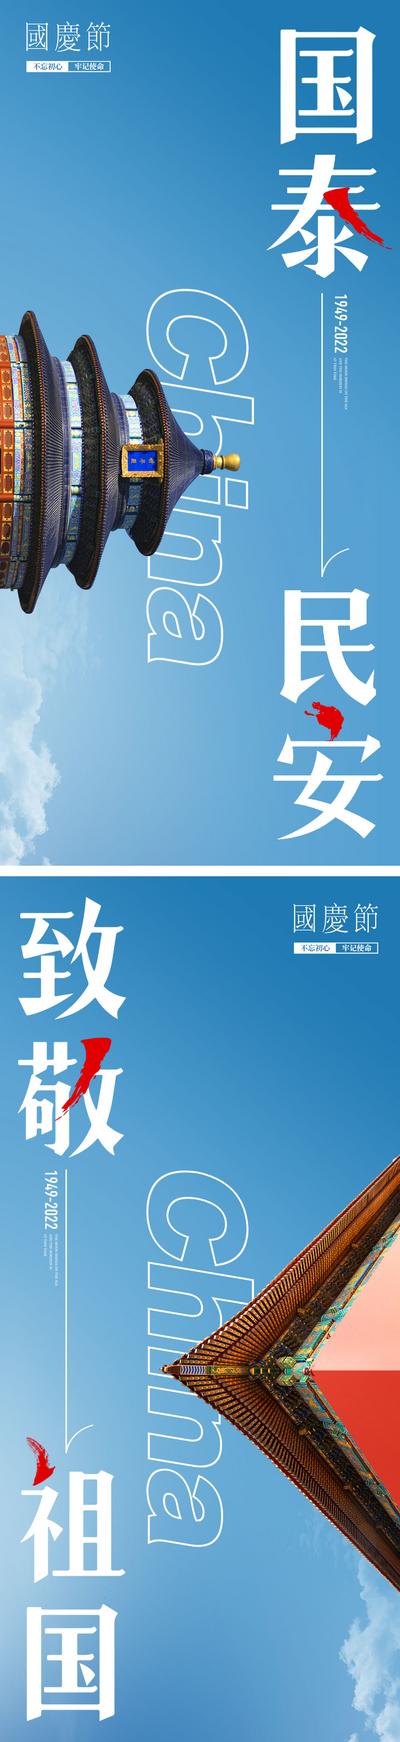 南门网 海报 公历节日 国庆节 天坛 故宫 屋檐 蓝色 天空 大气